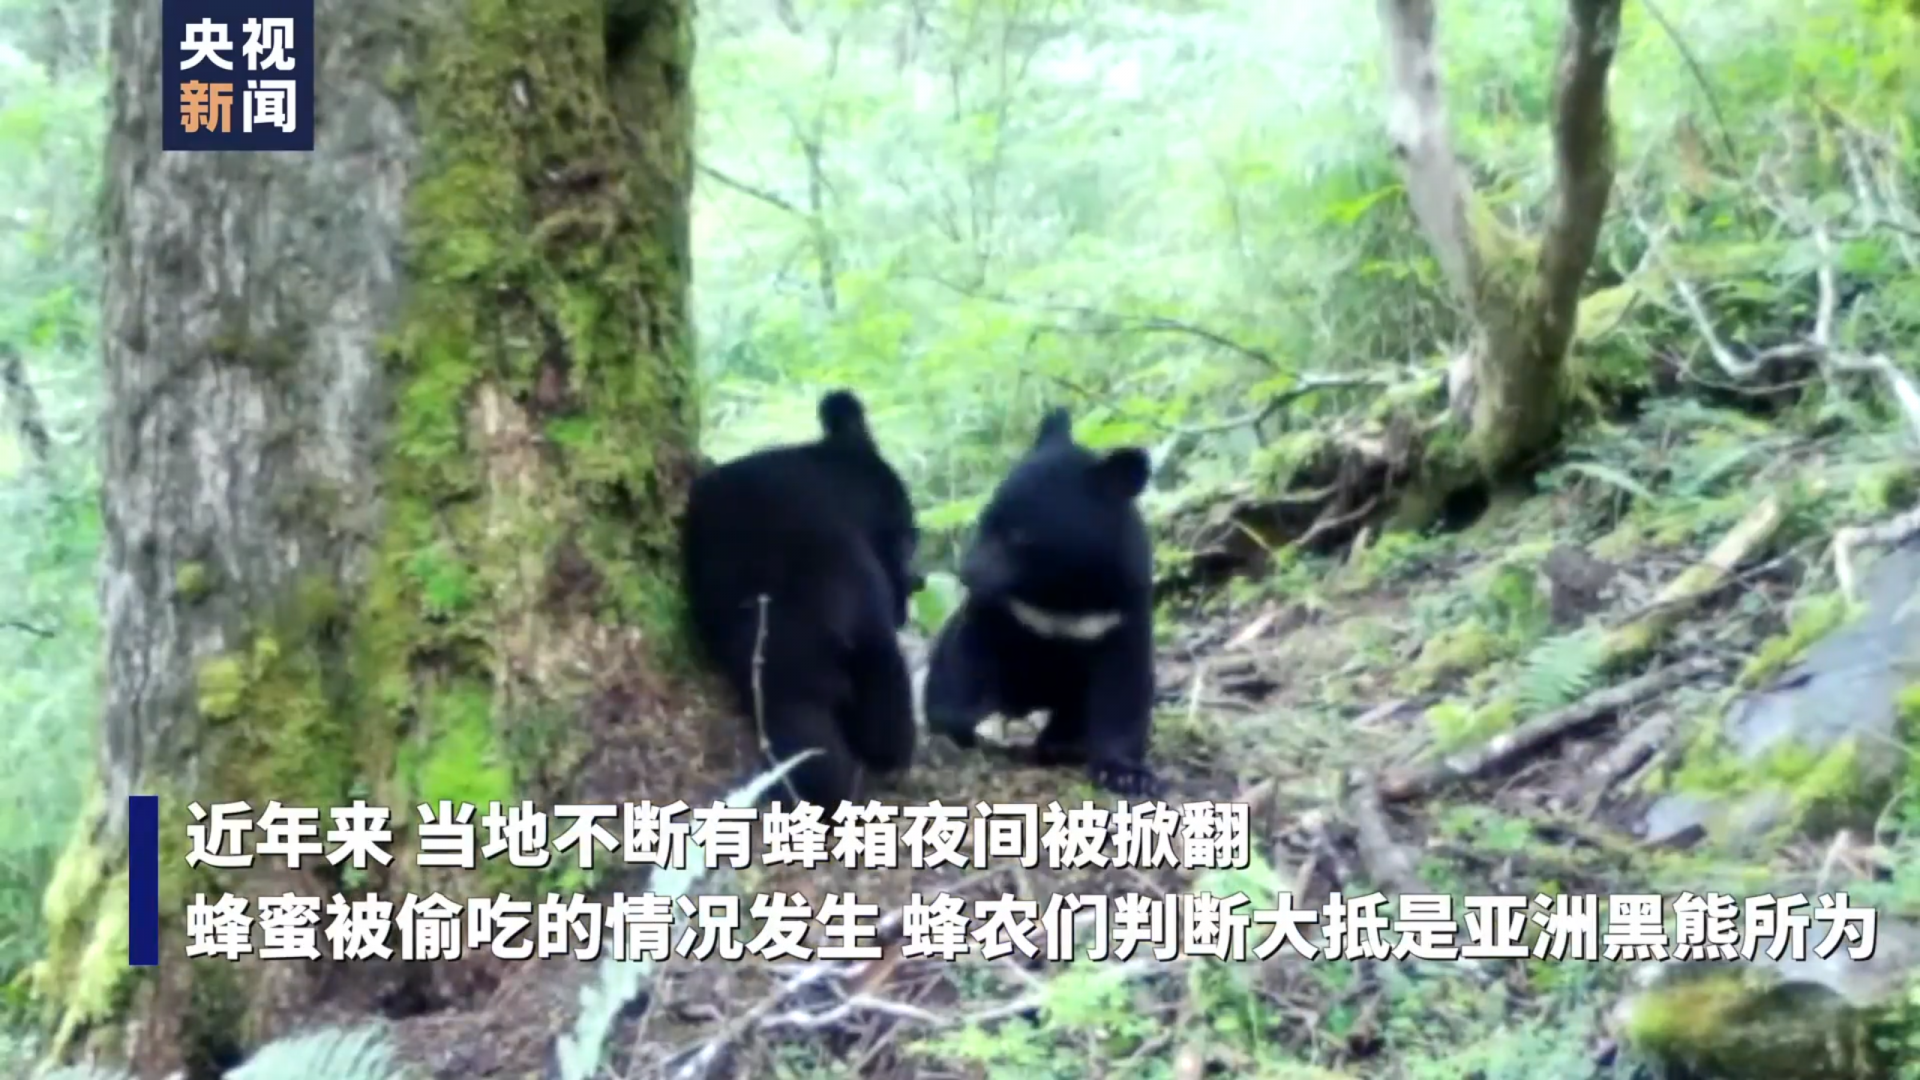 黑熊半夜“偷蜜” 被红外相机抓拍现行